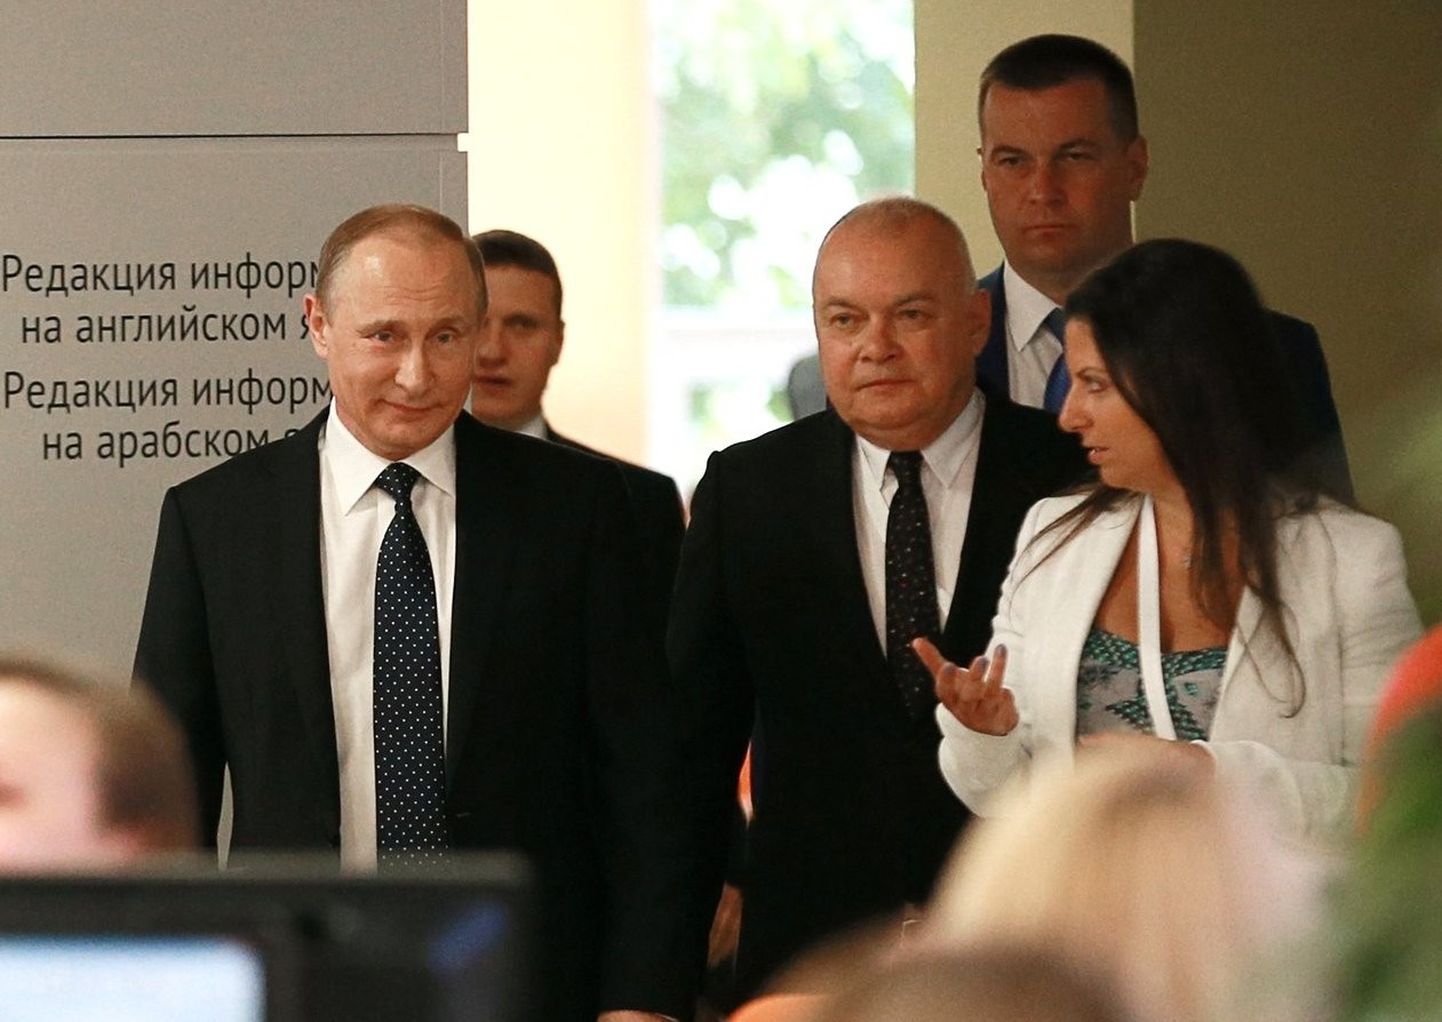 Путин, руководитель "Россия сегодня" пропагандист Дмитрий Киселев и главред RT Маргарита Симоньян в 2016 году.